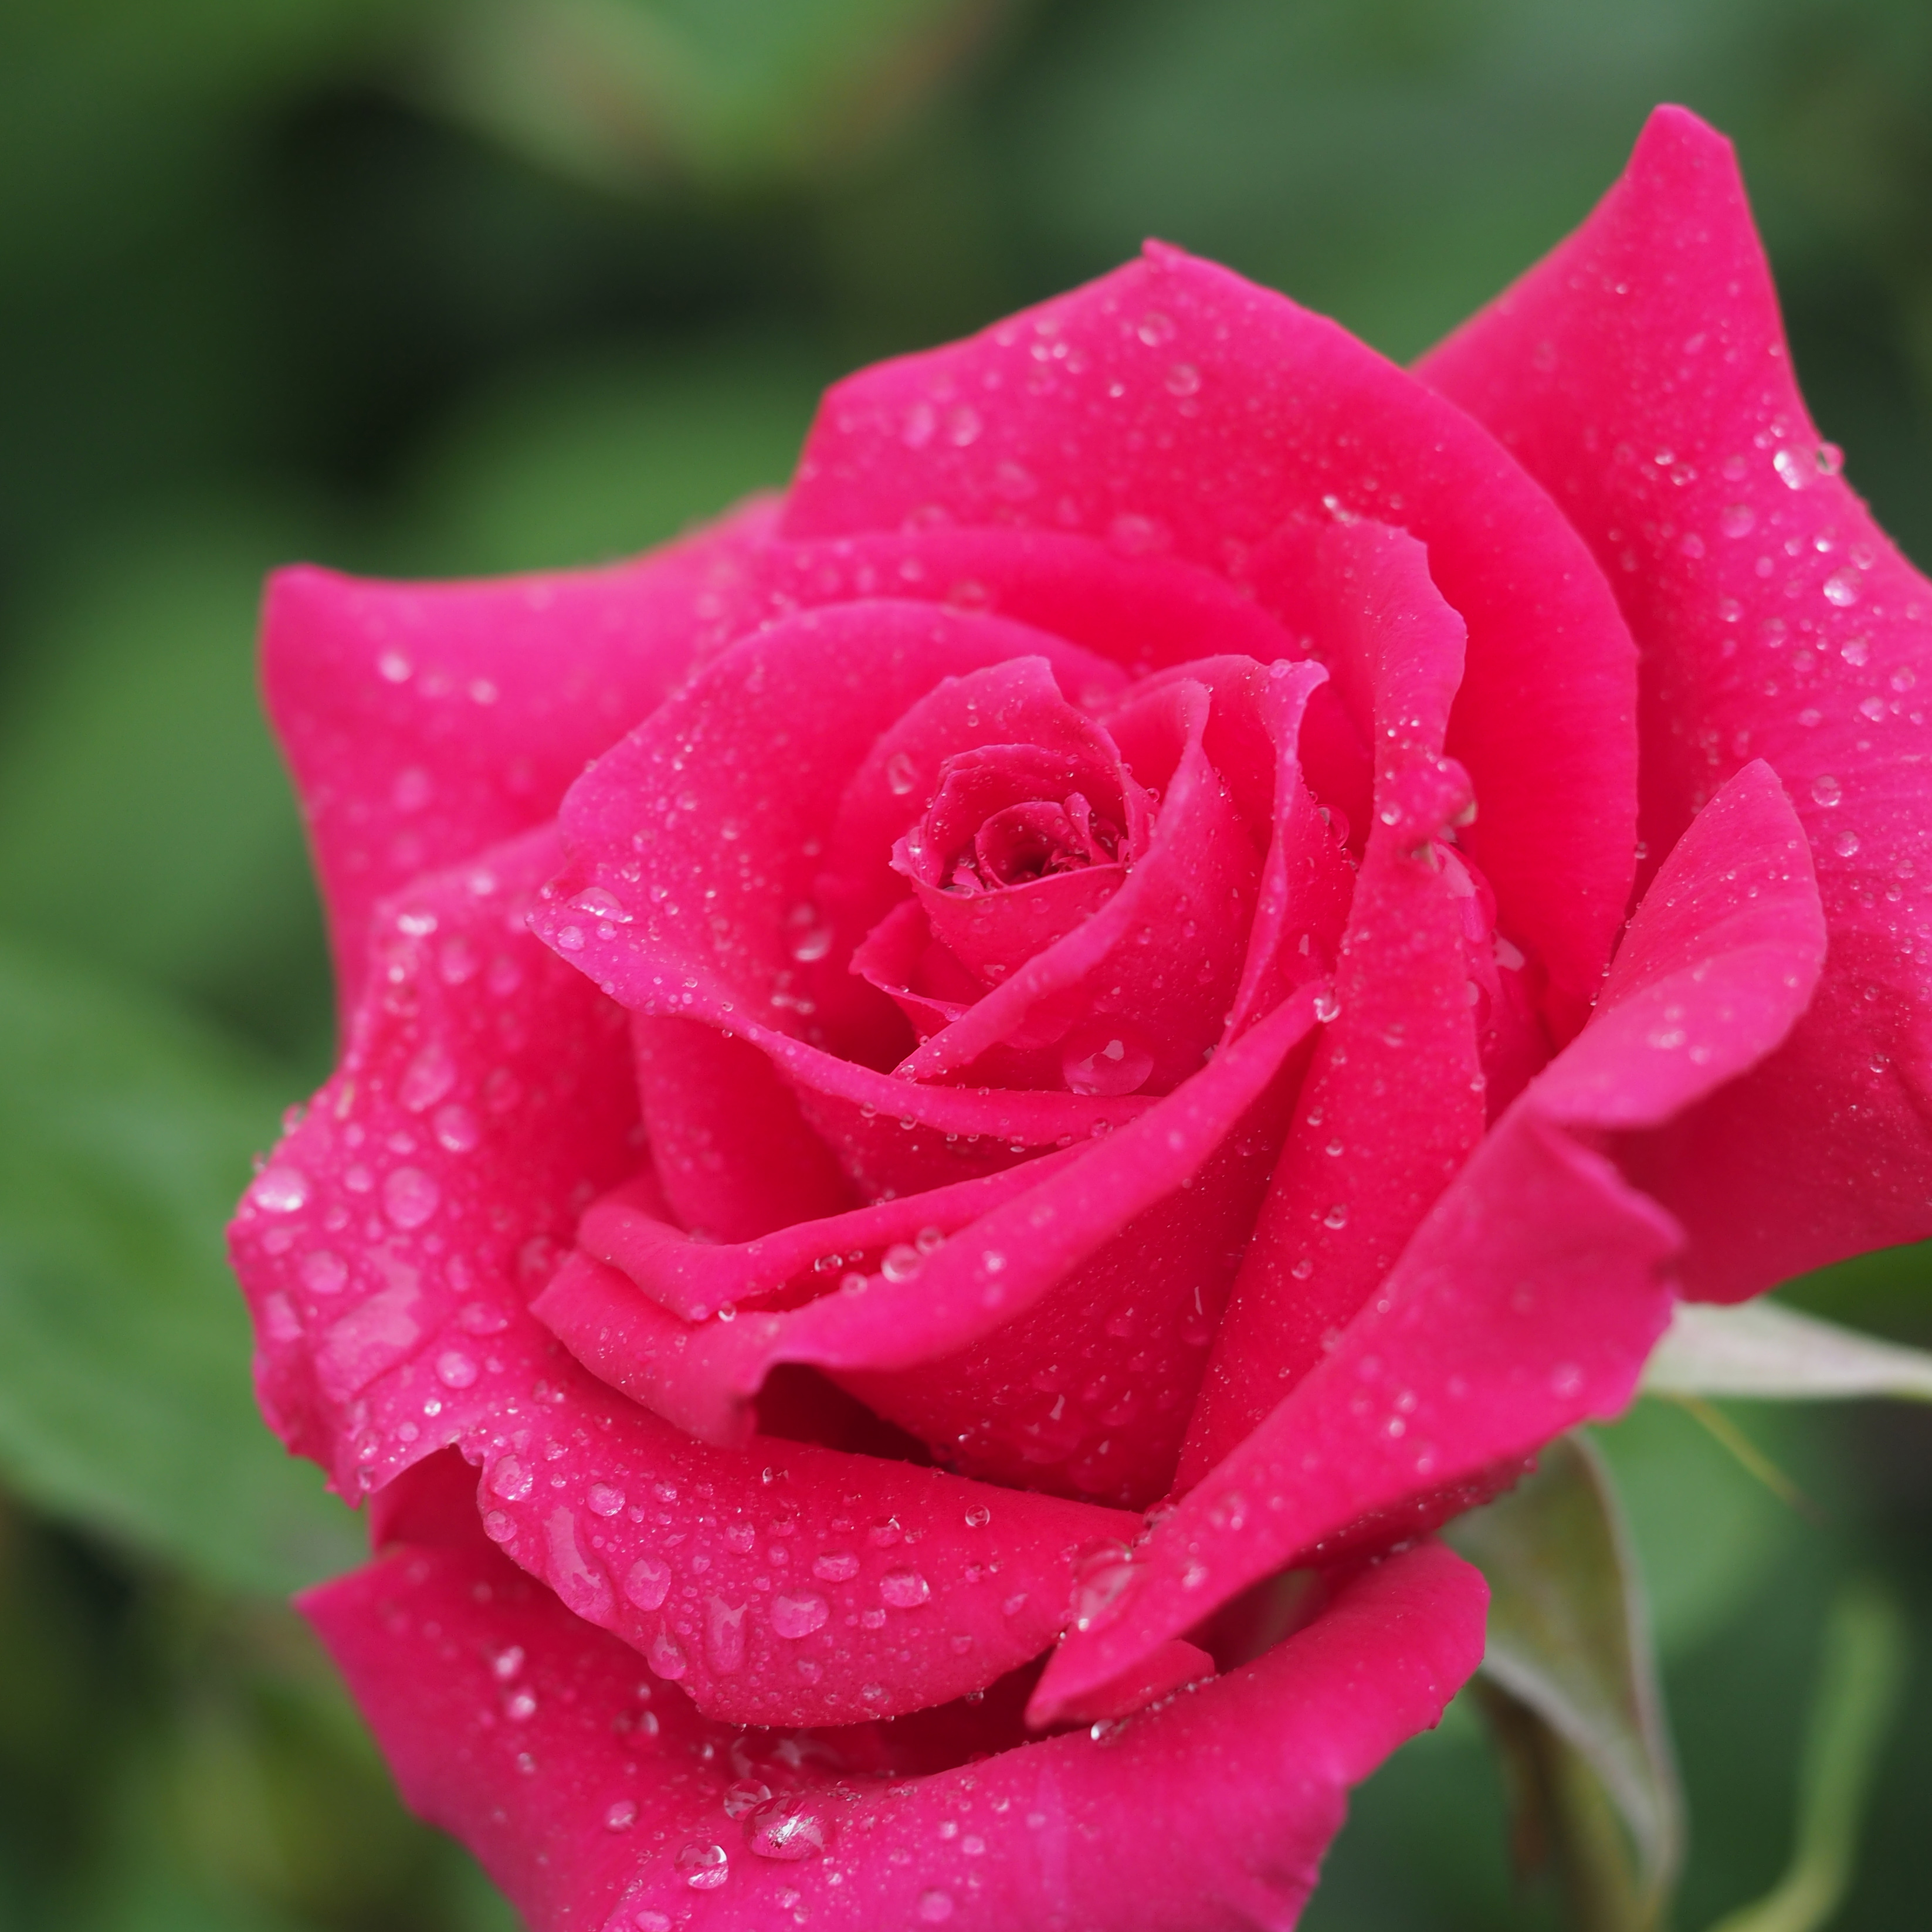 Rose, Sumhole, バラ, サムホール, (17860270661)